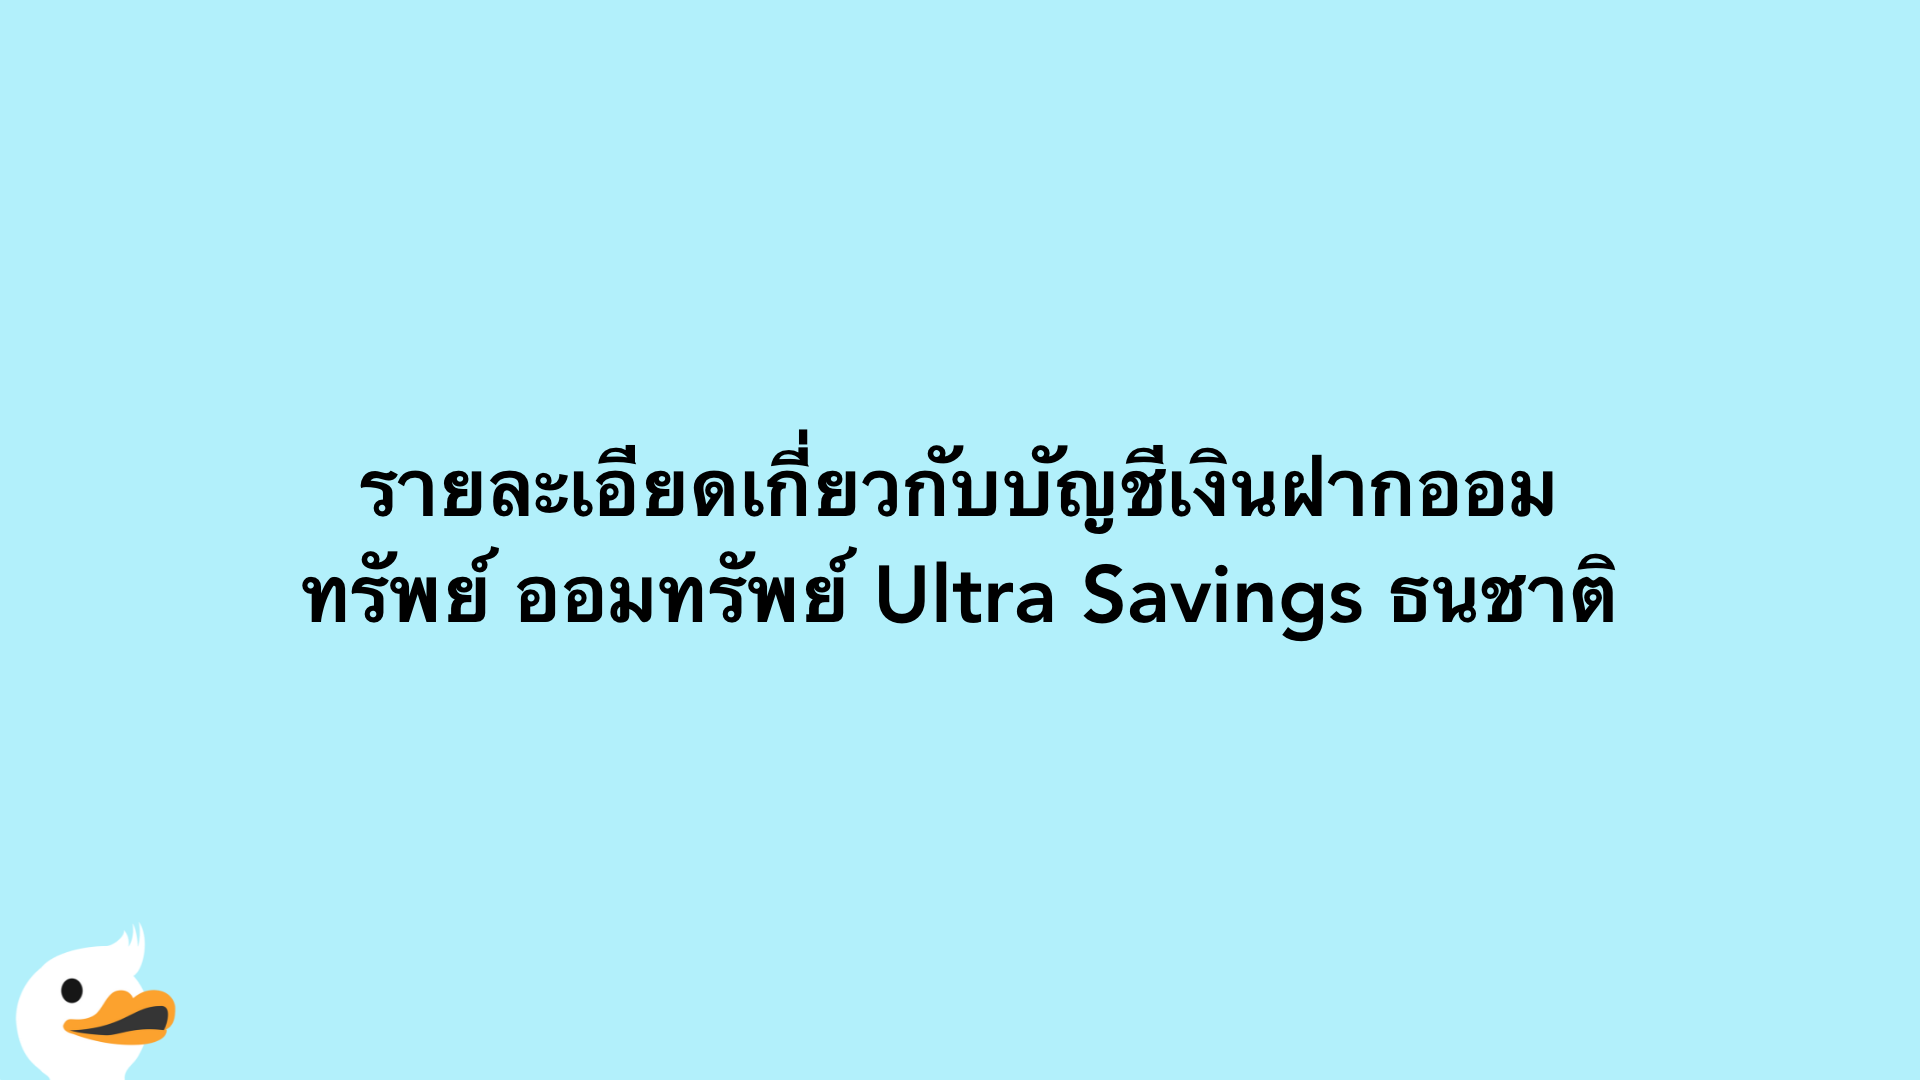 รายละเอียดเกี่ยวกับบัญชีเงินฝากออมทรัพย์ ออมทรัพย์ Ultra Savings ธนชาติ